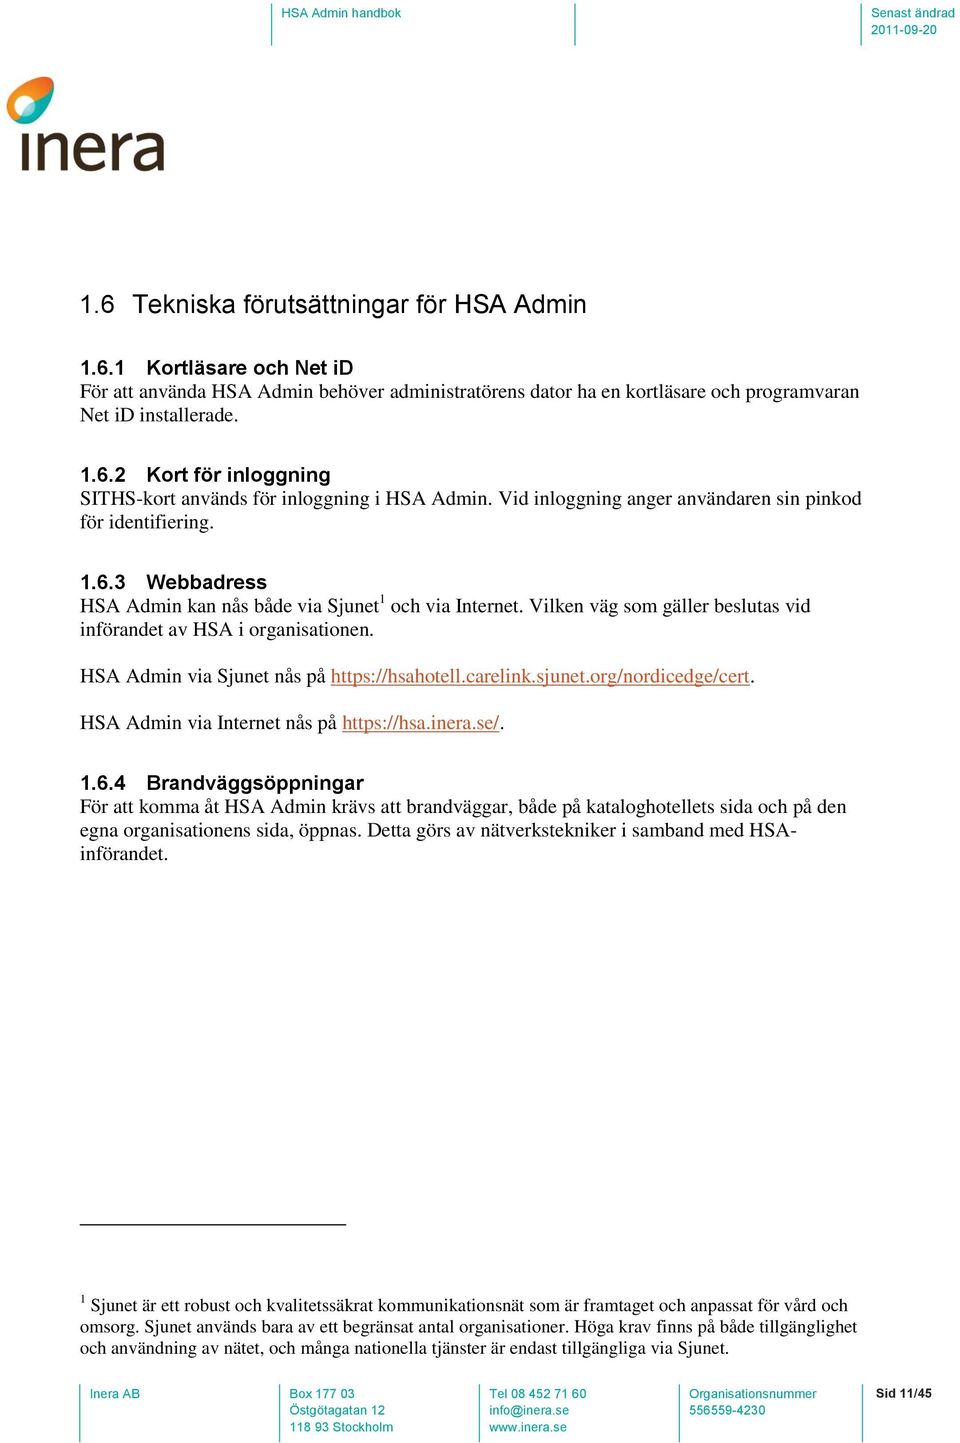 Vilken väg som gäller beslutas vid införandet av HSA i organisationen. HSA Admin via Sjunet nås på https://hsahotell.carelink.sjunet.org/nordicedge/cert. HSA Admin via Internet nås på https://hsa.